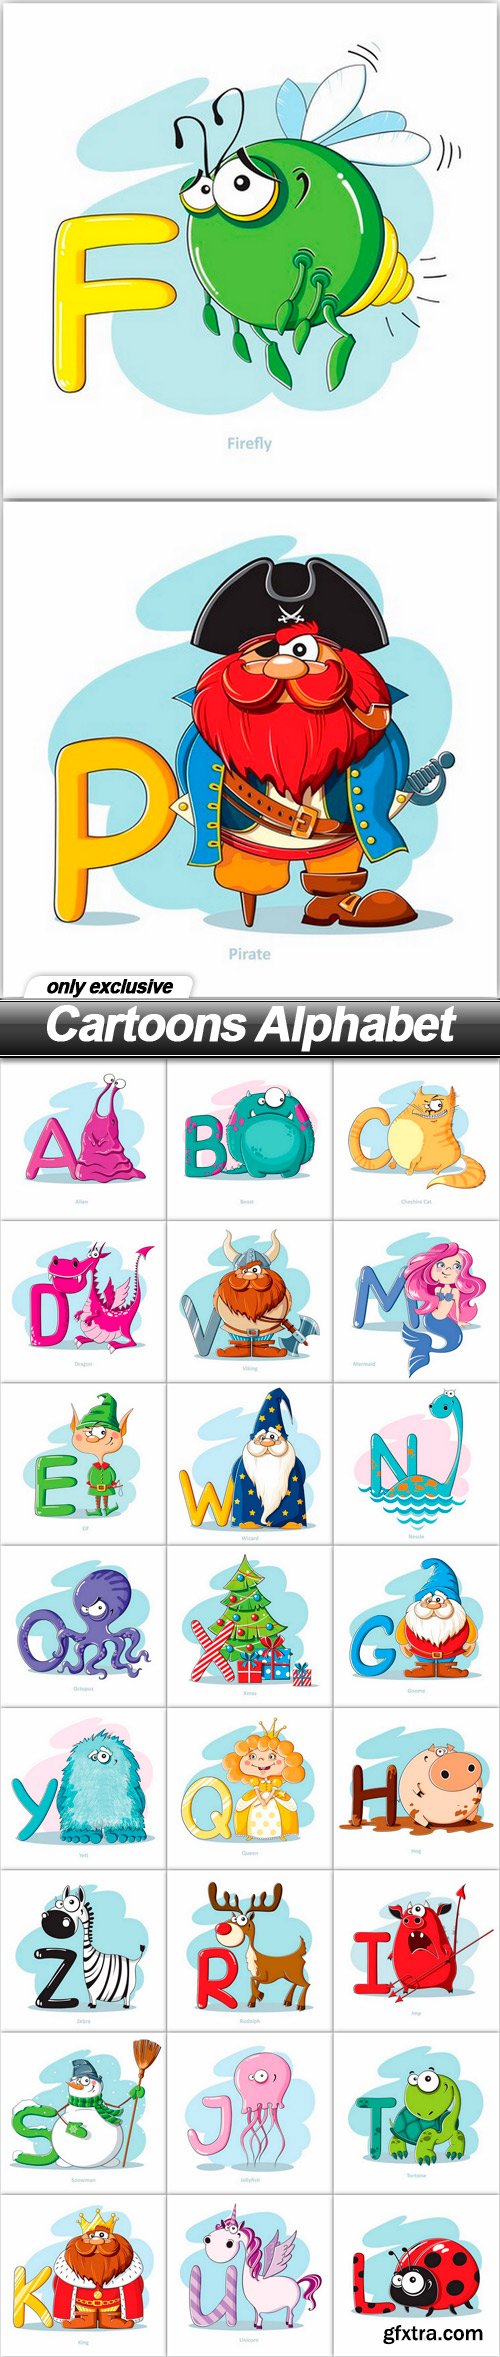 Cartoons Alphabet - 26 EPS